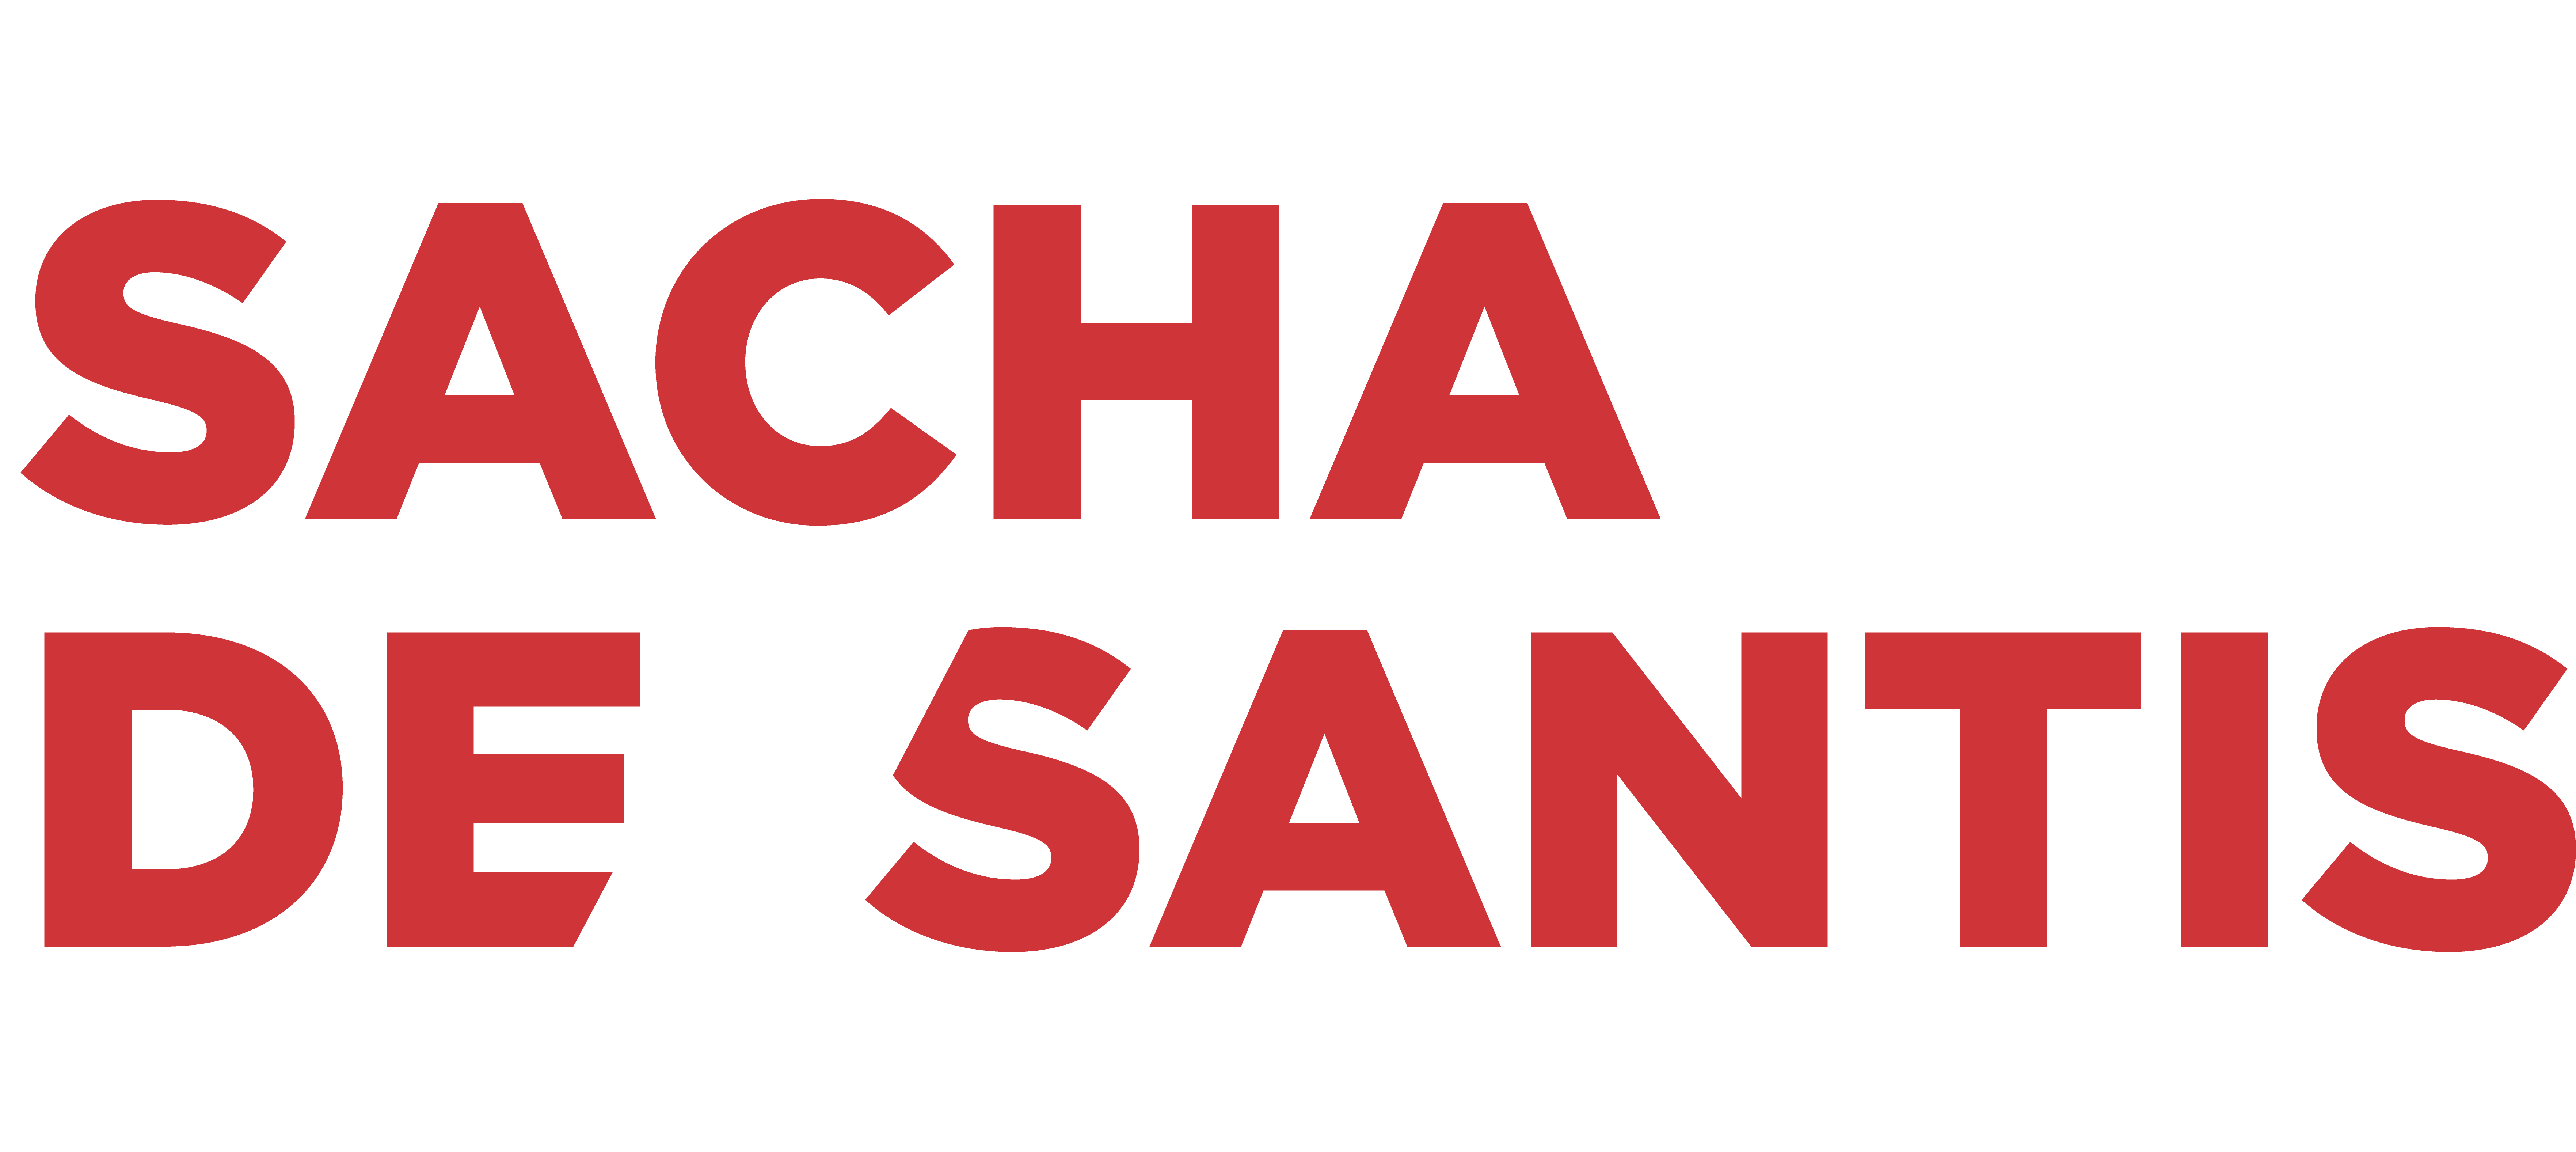 Team Sacha de Santis